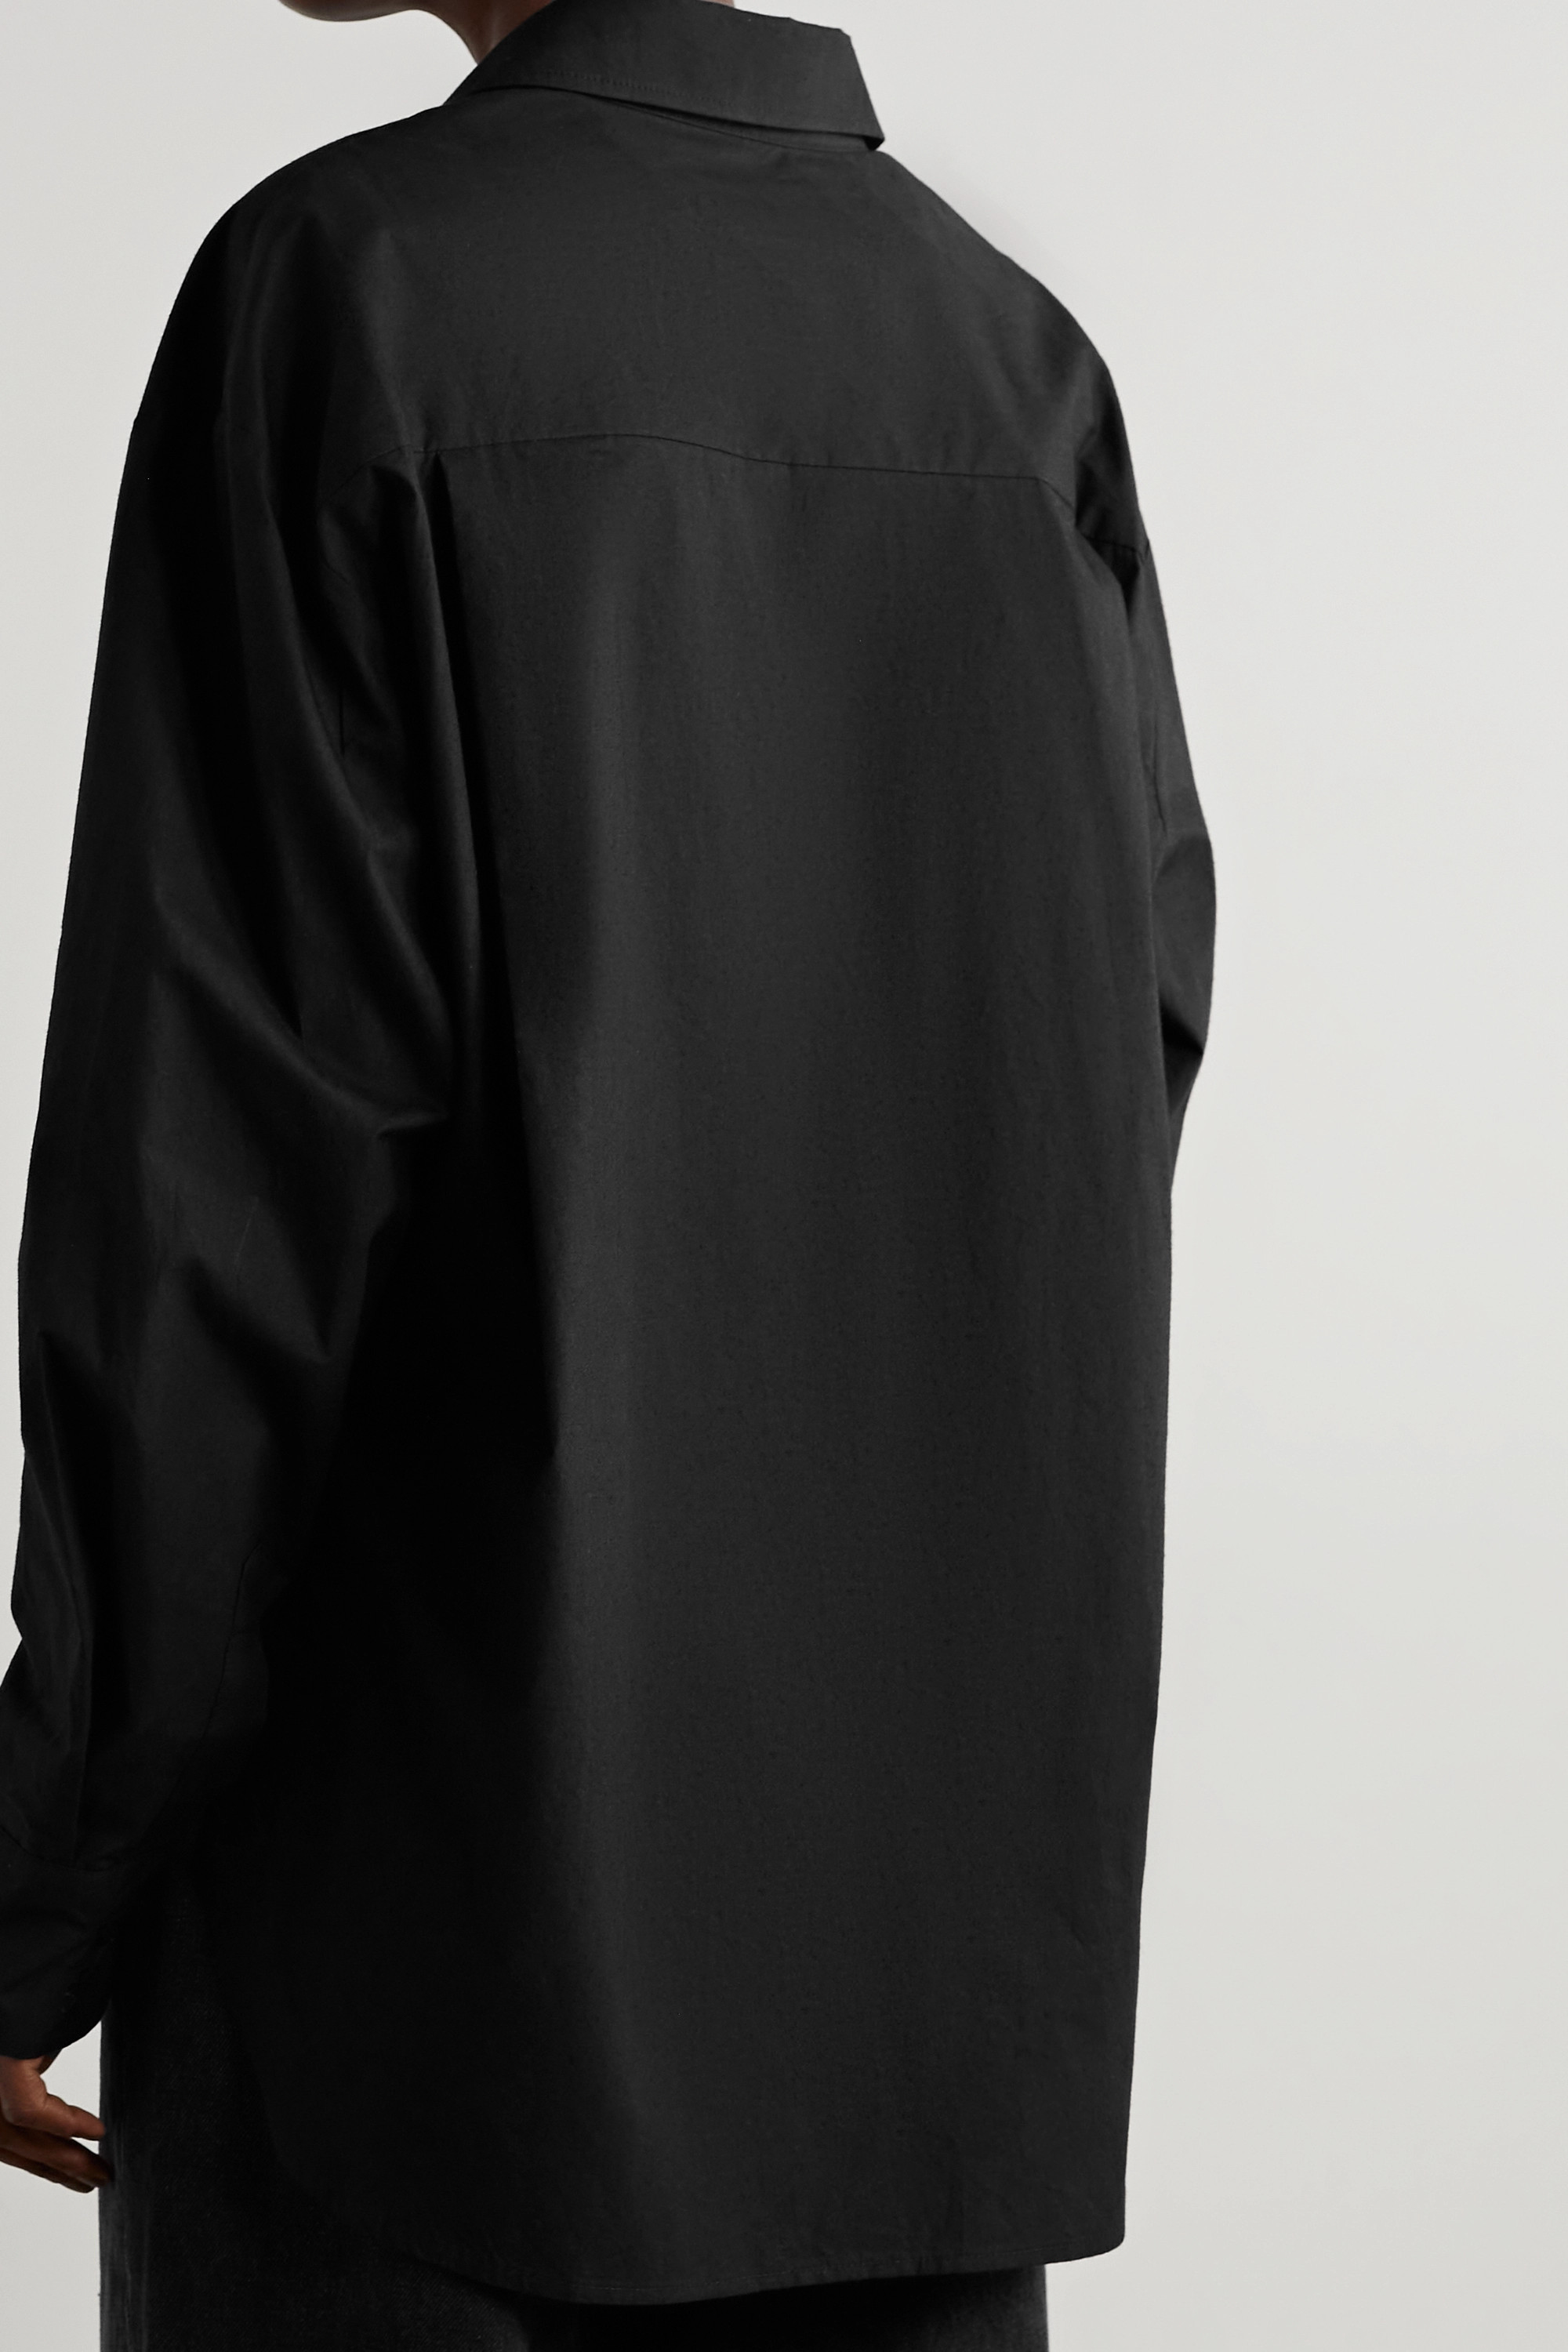 FRANKIE SHOP рубашка Lui из органического хлопка и поплина, черный фото